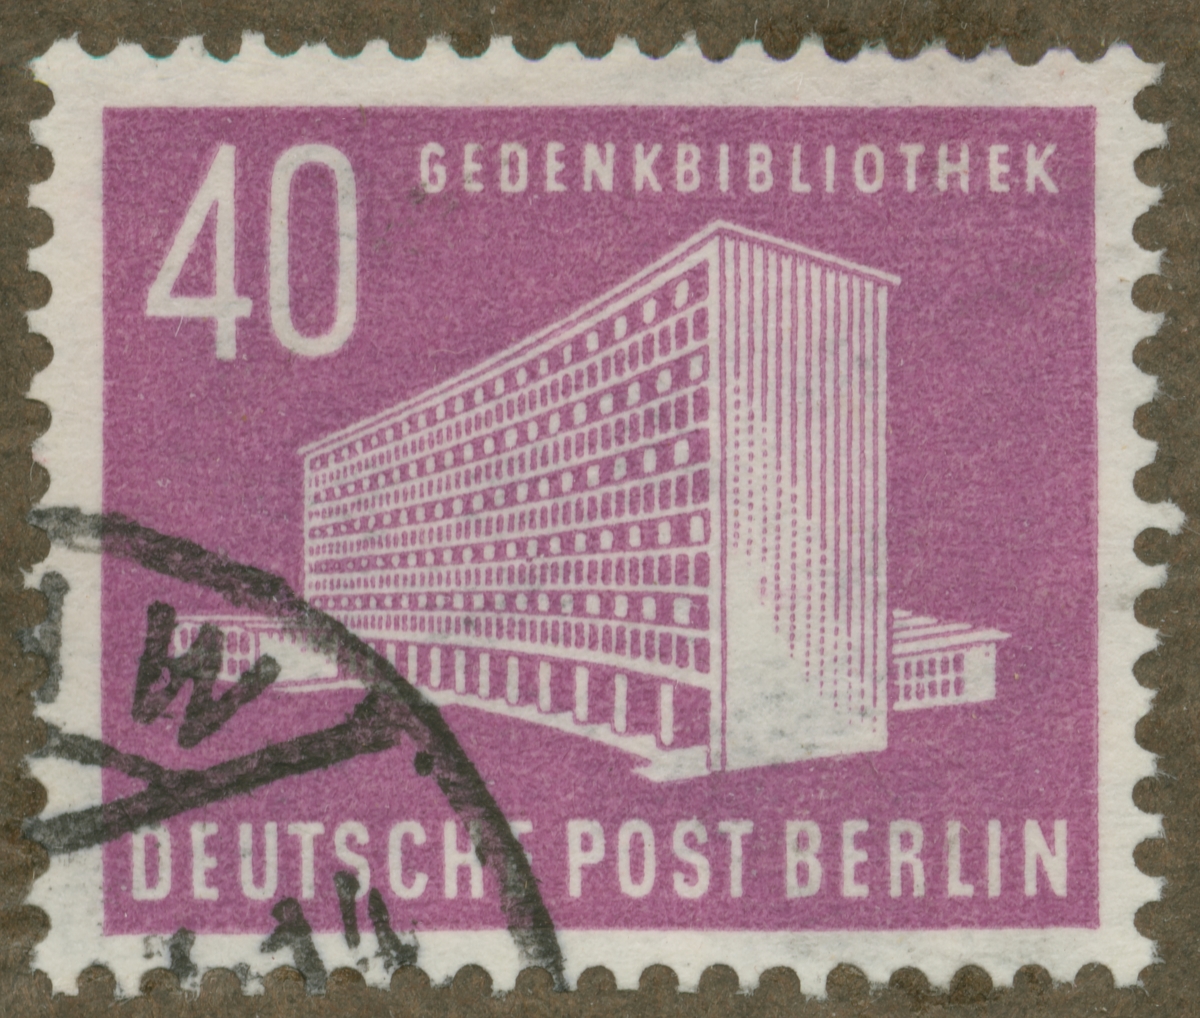 Frimärke ur Gösta Bodmans filatelistiska motivsamling, påbörjad 1950.
Frimärke från Tyskland, 1953. Motiv av Centralbiblioteket i Berlin.